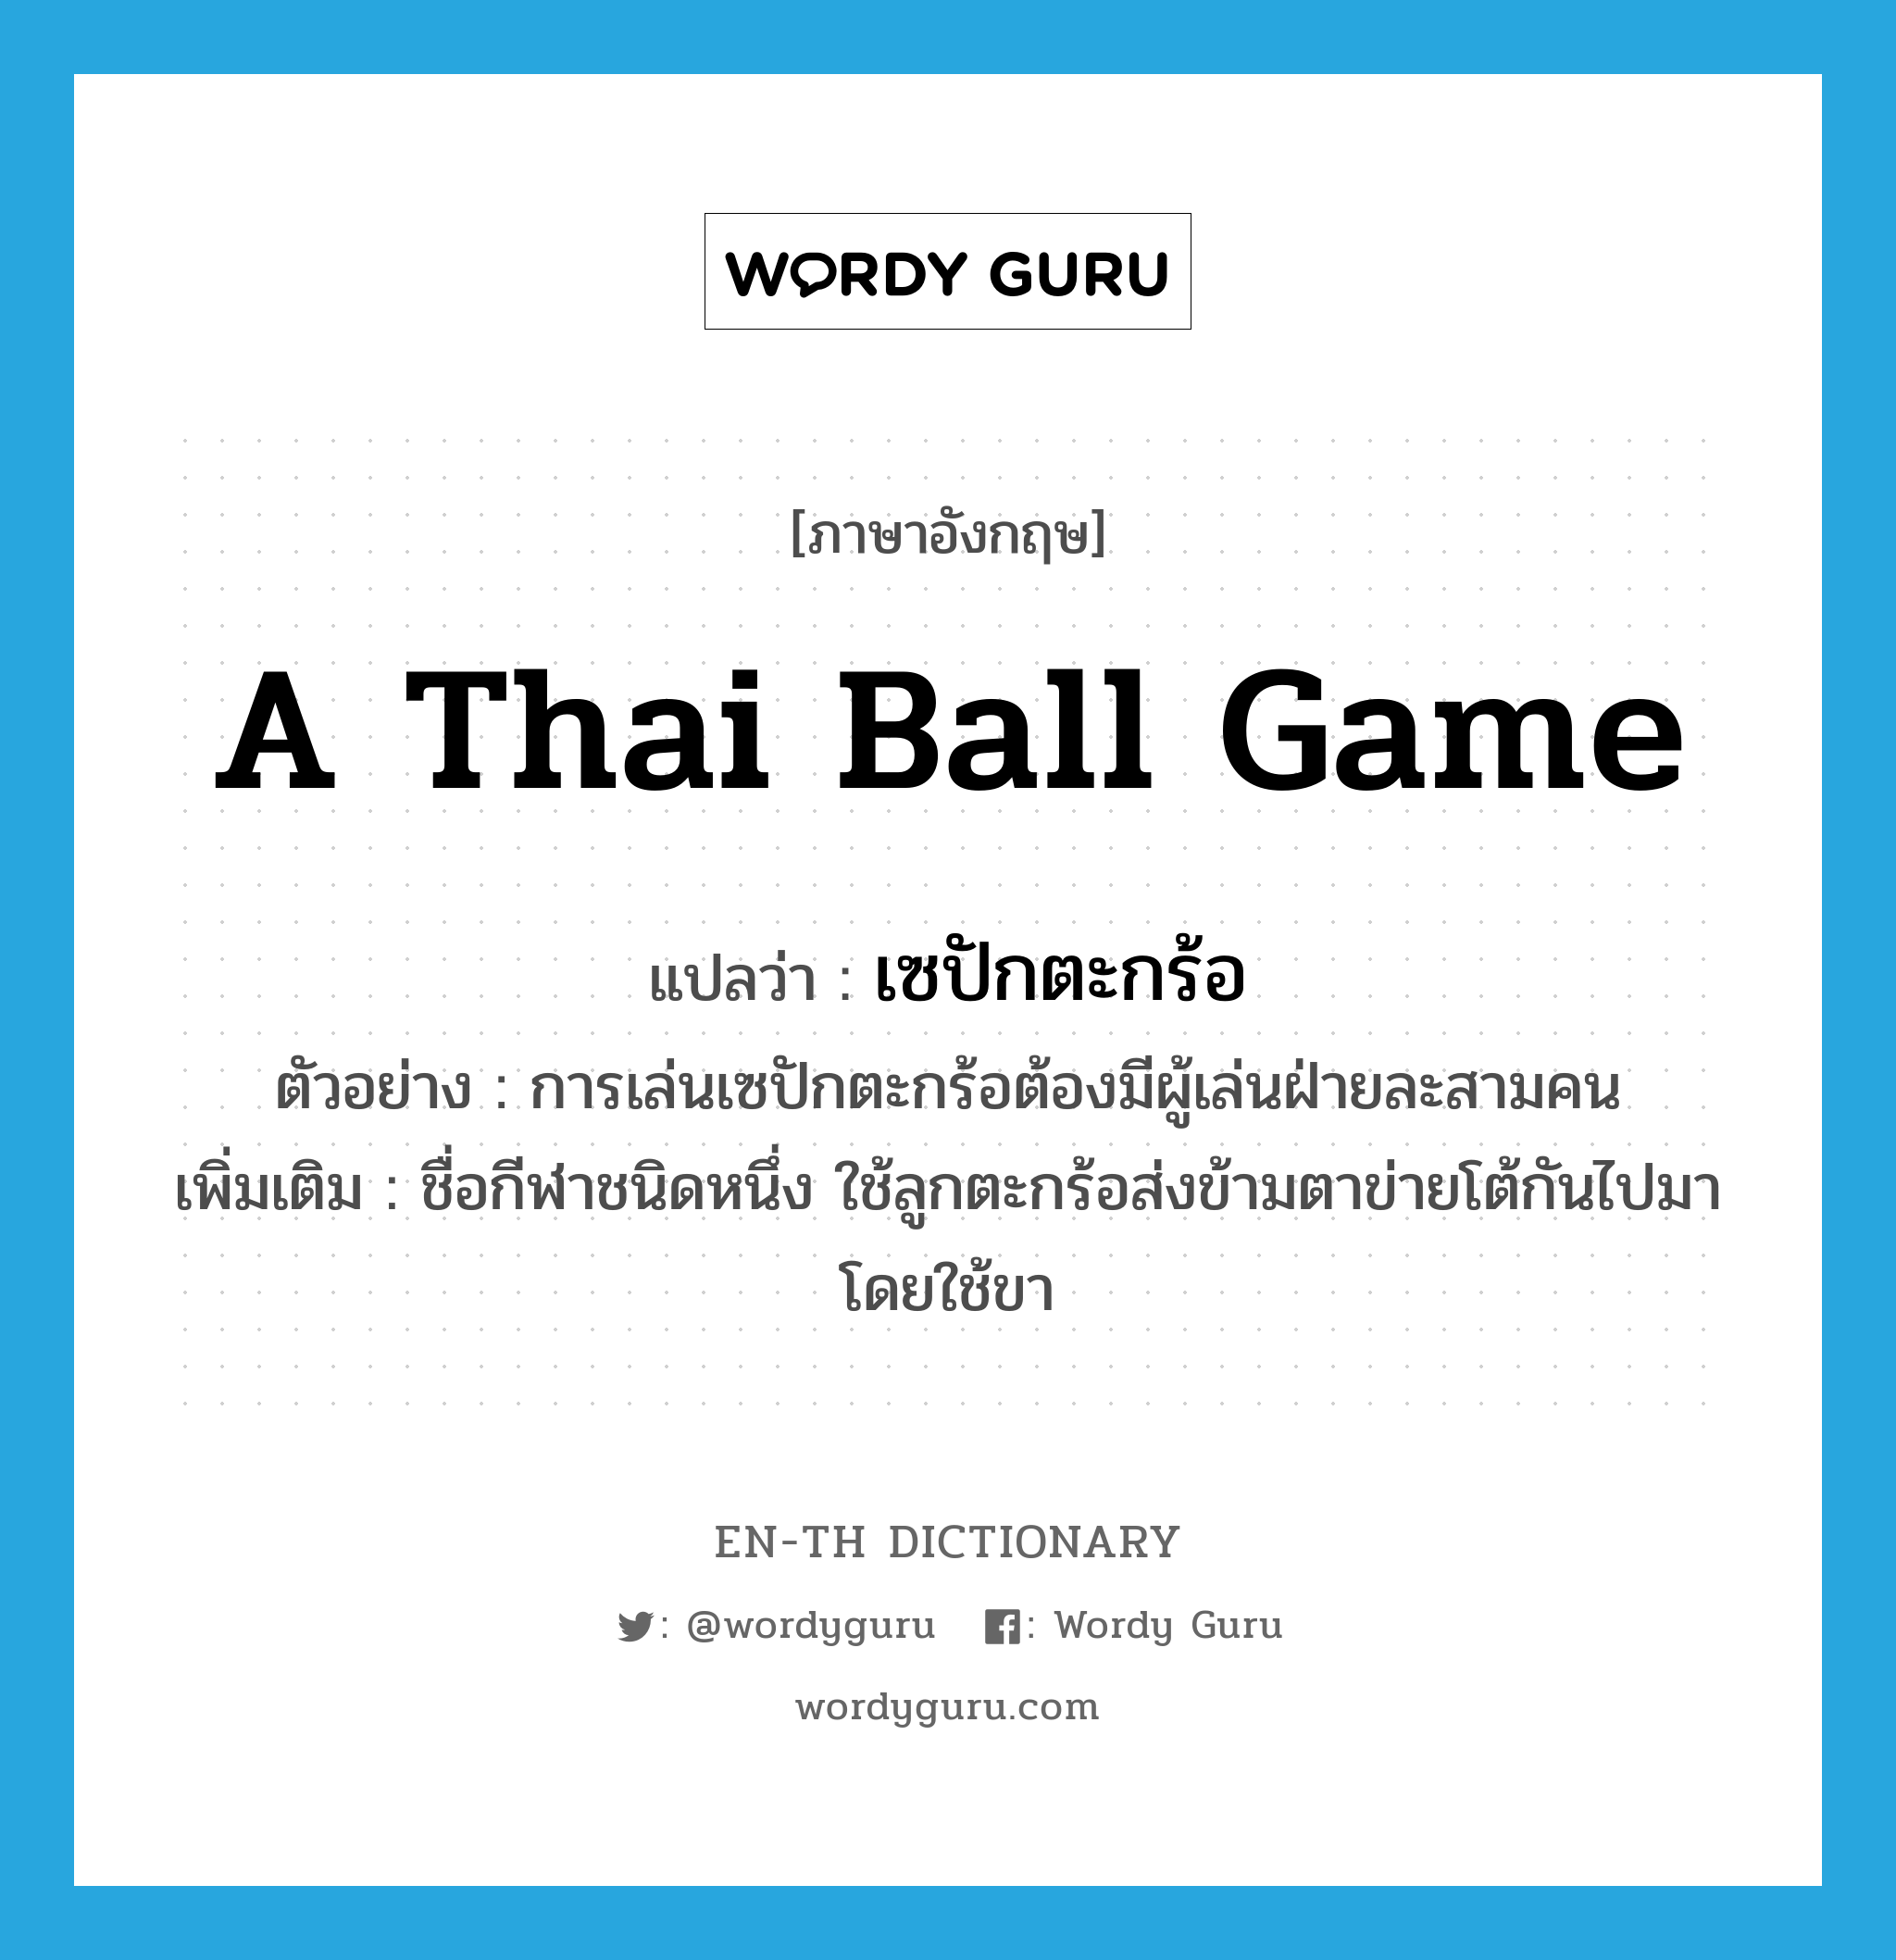 เซปักตะกร้อ ภาษาอังกฤษ?, คำศัพท์ภาษาอังกฤษ เซปักตะกร้อ แปลว่า a Thai ball game ประเภท N ตัวอย่าง การเล่นเซปักตะกร้อต้องมีผู้เล่นฝ่ายละสามคน เพิ่มเติม ชื่อกีฬาชนิดหนึ่ง ใช้ลูกตะกร้อส่งข้ามตาข่ายโต้กันไปมา โดยใช้ขา หมวด N